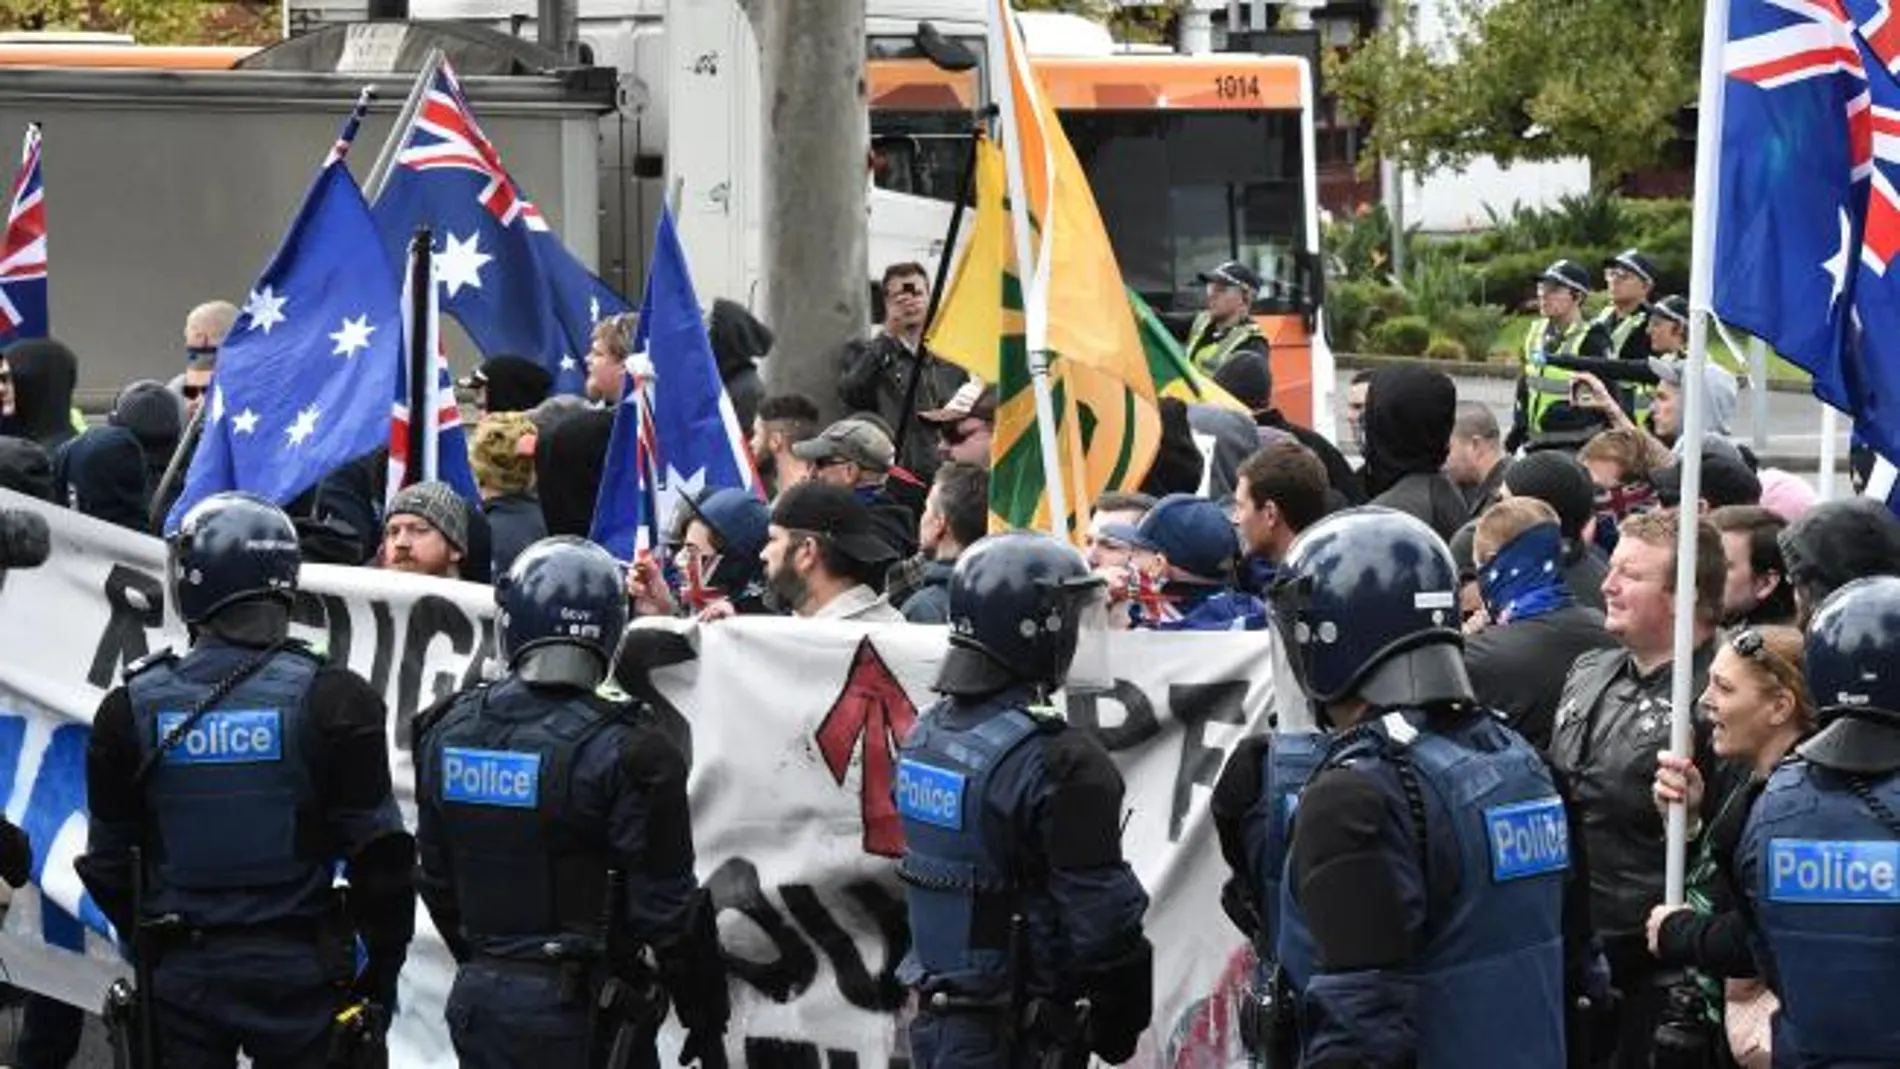  Violentos enfrentamientos en Australia entre la extraderecha y la extrema izquierda